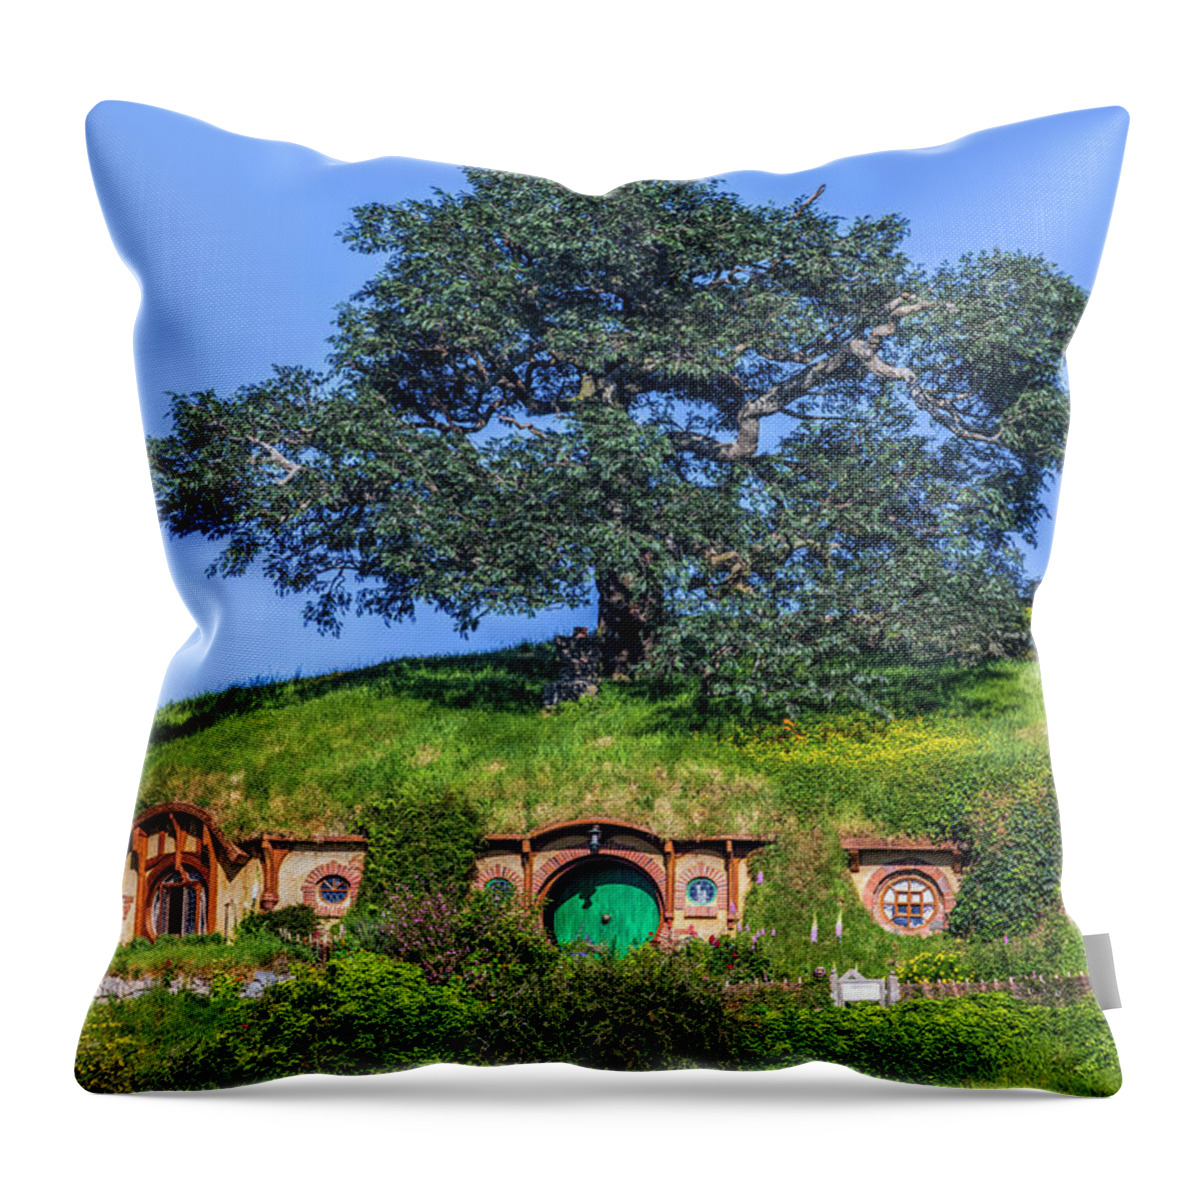 Hobbiton Throw Pillow featuring the photograph Hobbiton - New Zealand by Joana Kruse